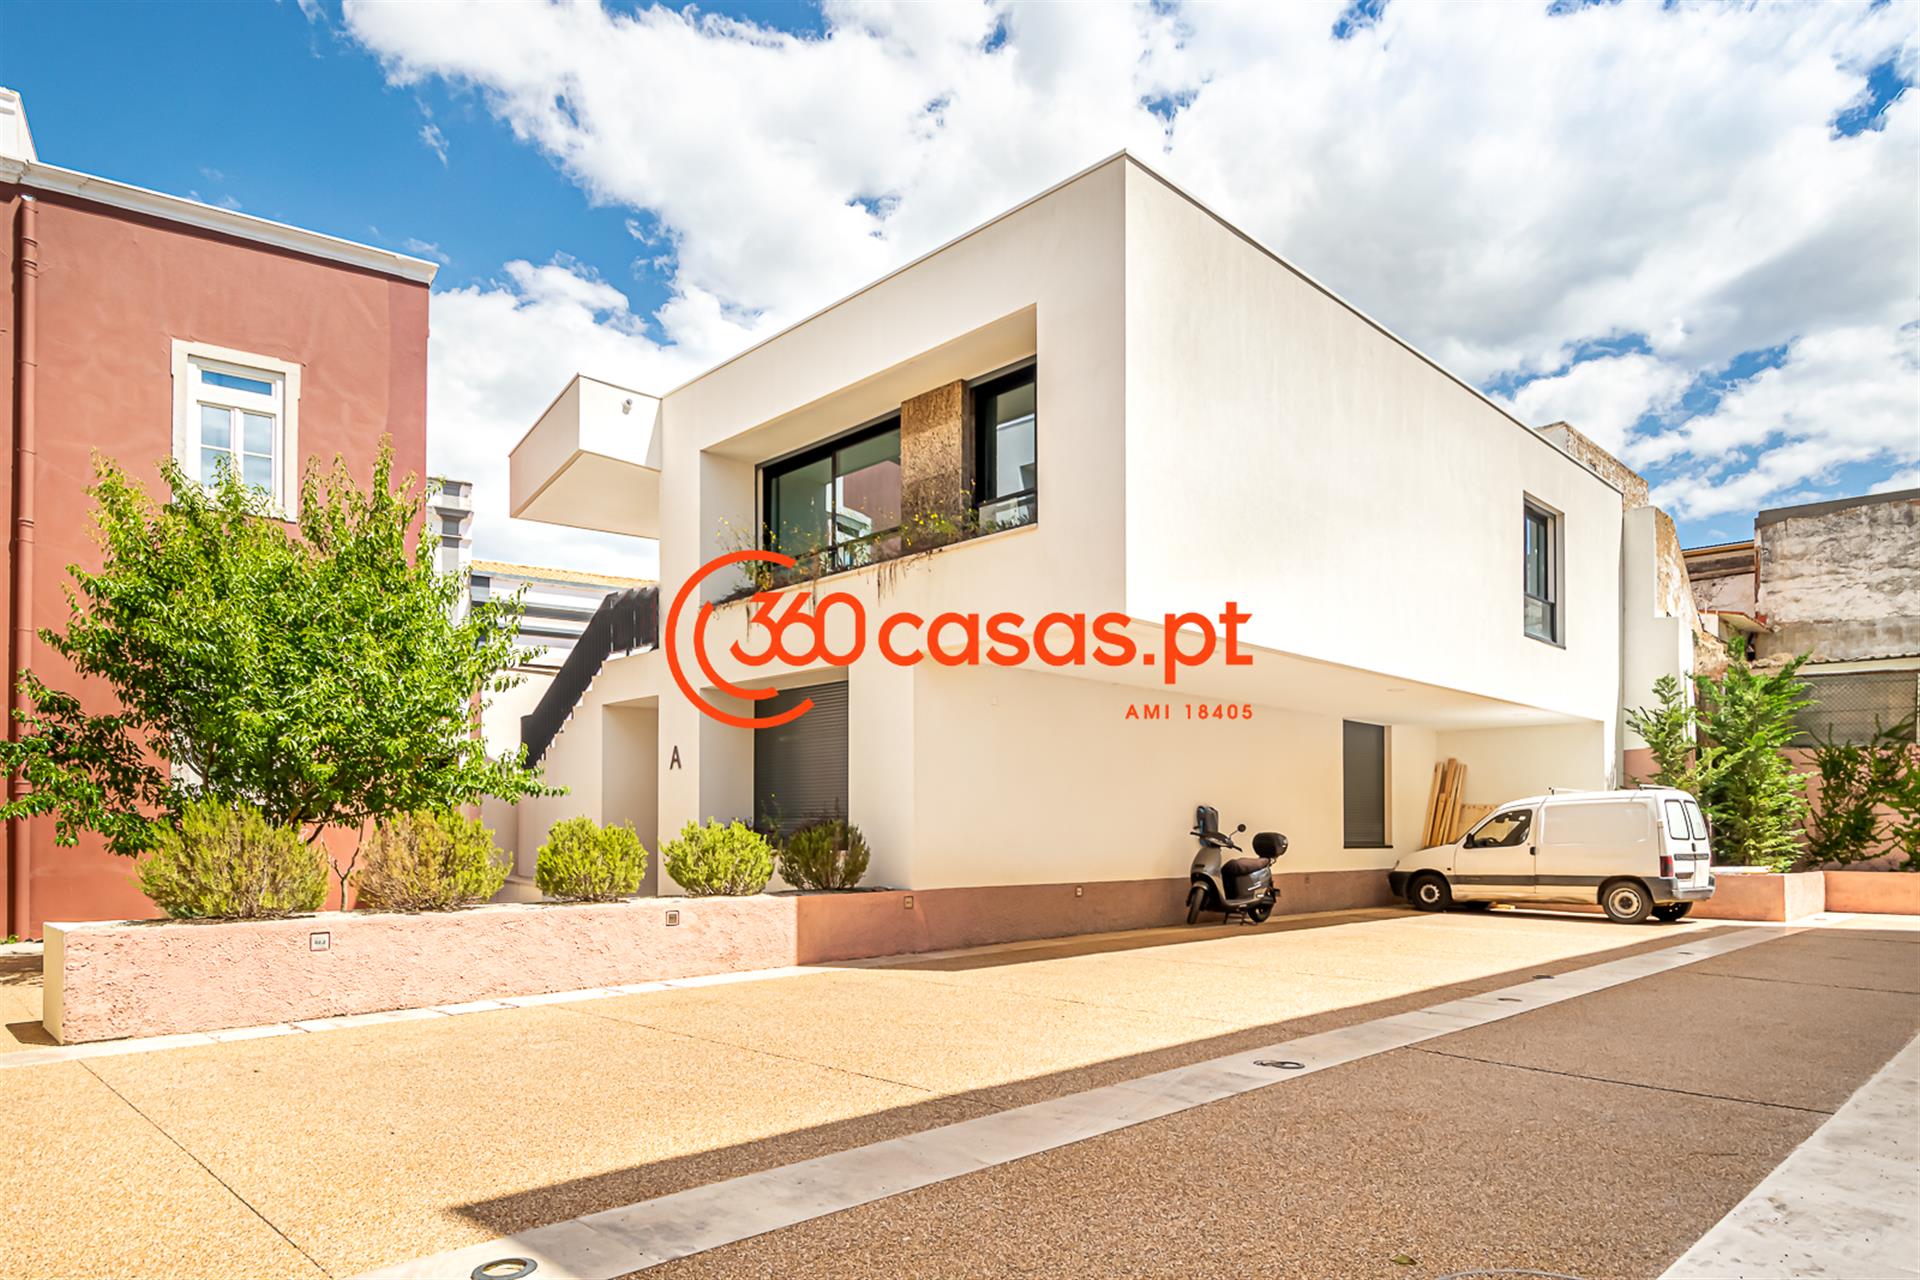 Luxury 2 bedroom apartment in a private condominium in Baixa and Historic Center of Faro